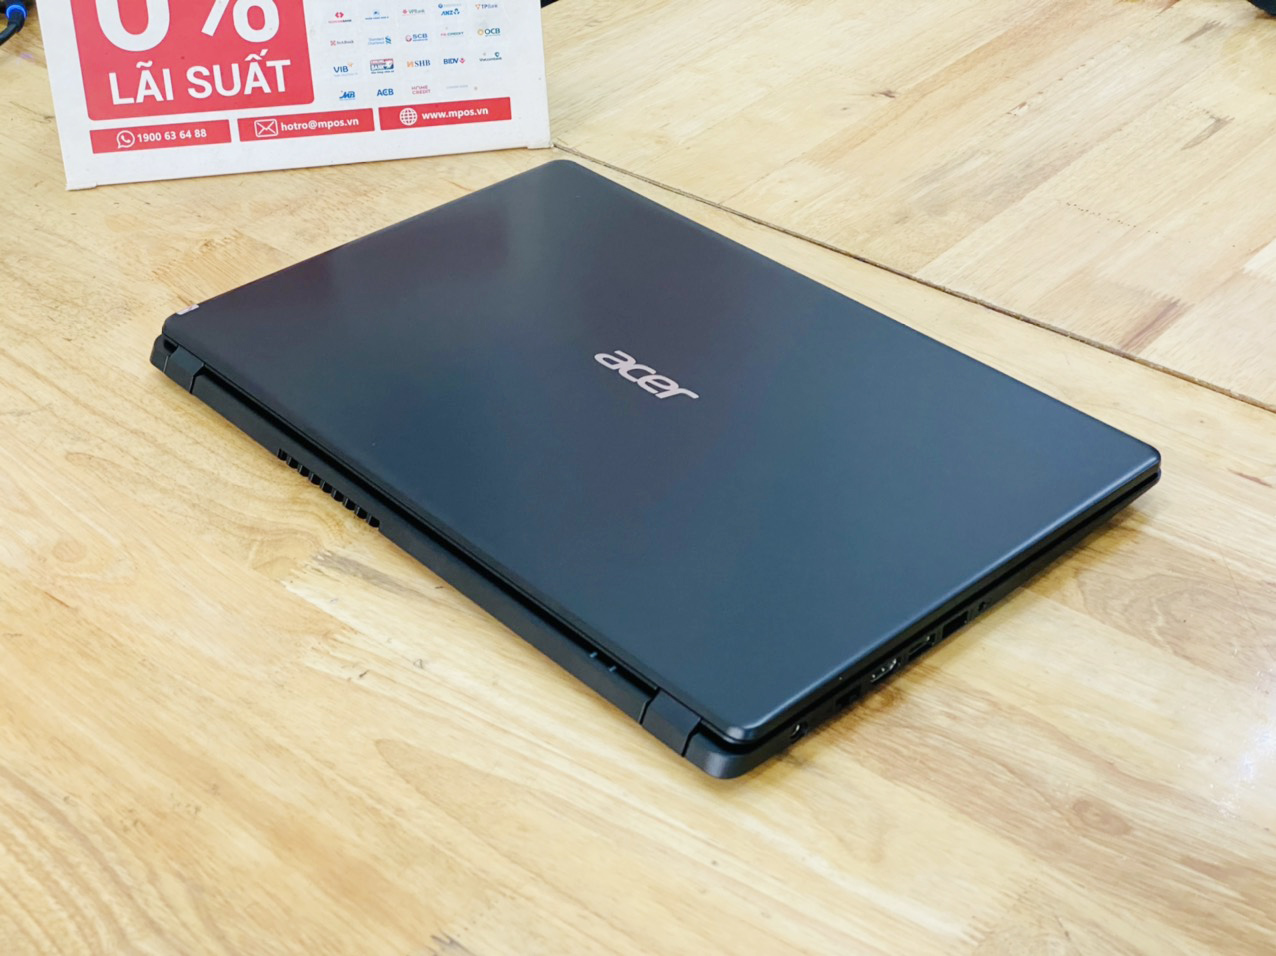 Laptop Acer Aspire A315 i3-7020U Ram 8G SSD 256G 15.6 inch Full HD Viền Mỏng Đẹp Giá Rẻ